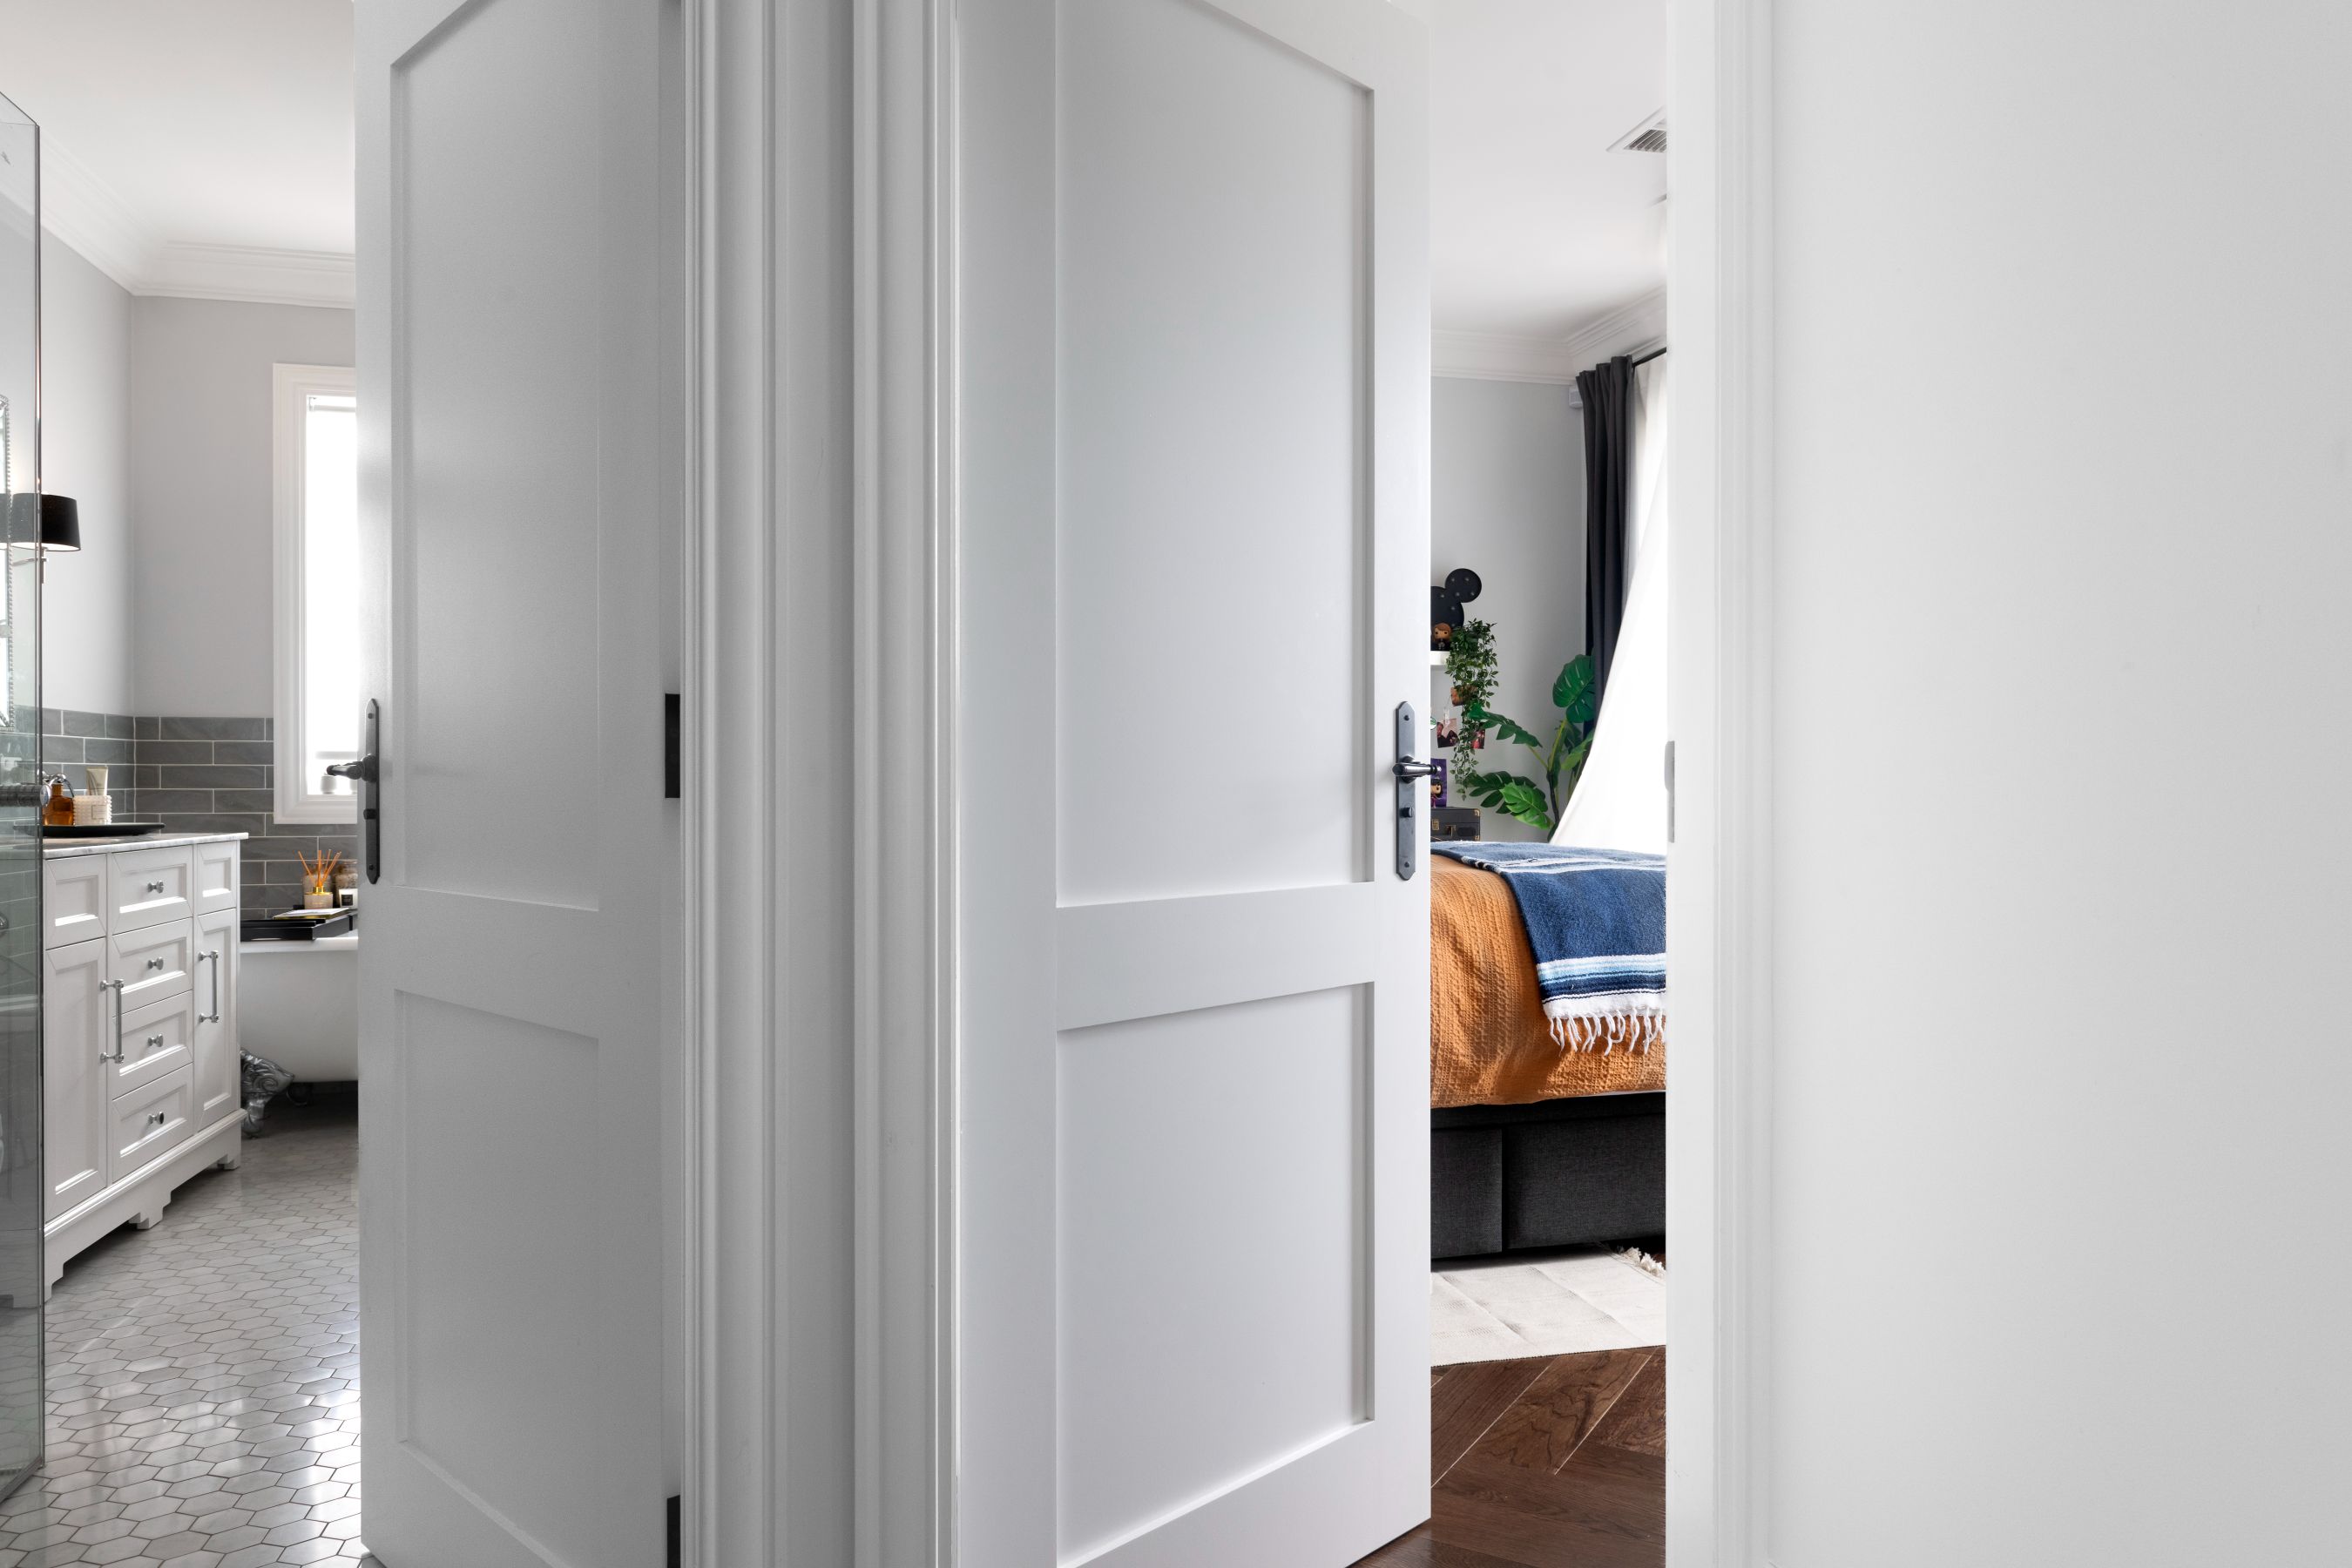 Doors Plus - Shaker Doors for Bathroom and Bedroom